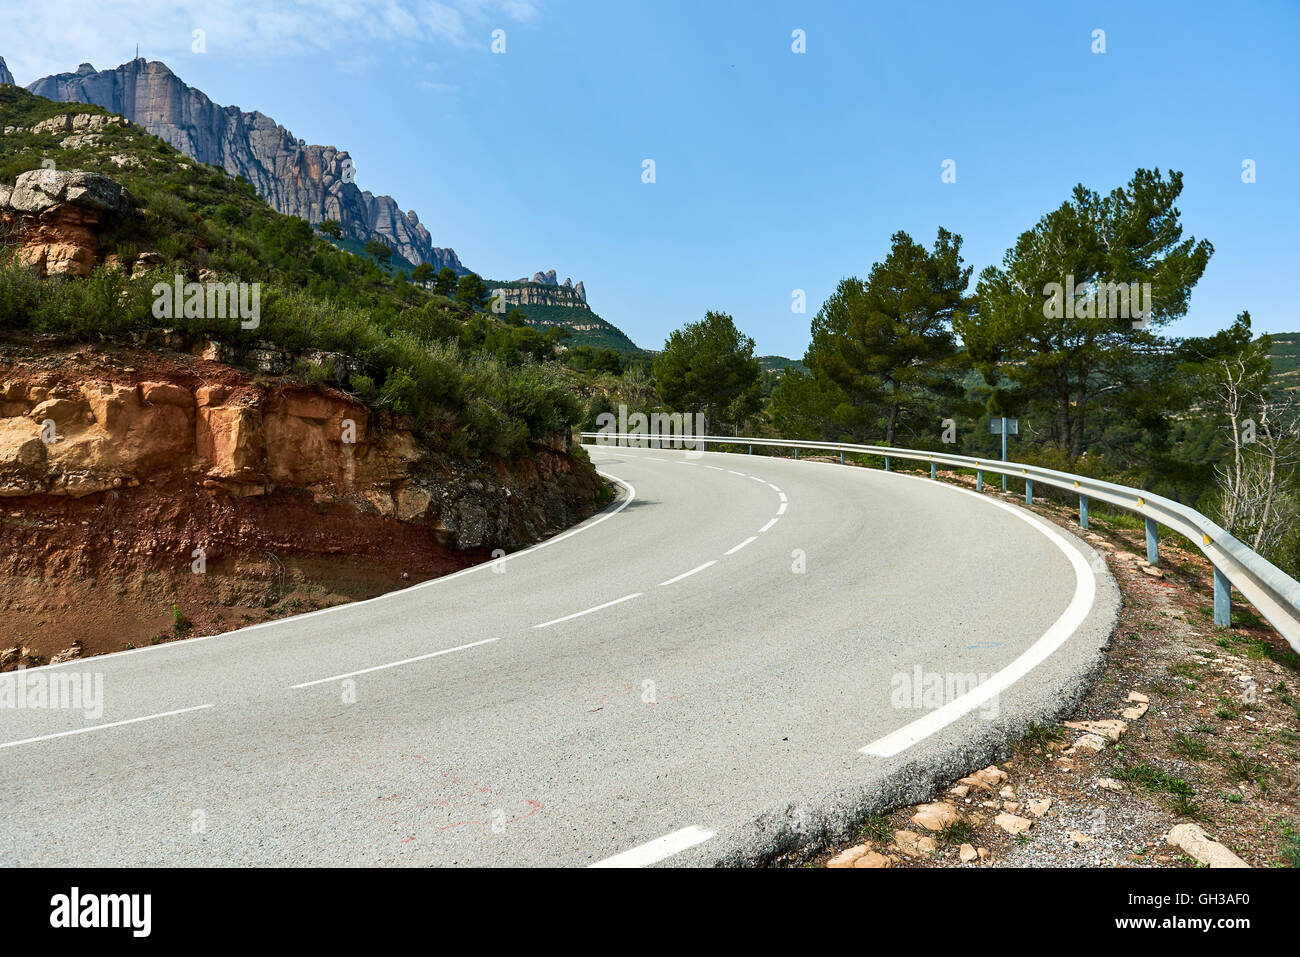 Route sinueuse menant à l'abbaye bénédictine de Santa Maria de Montserrat, en Catalogne. Espagne Banque D'Images